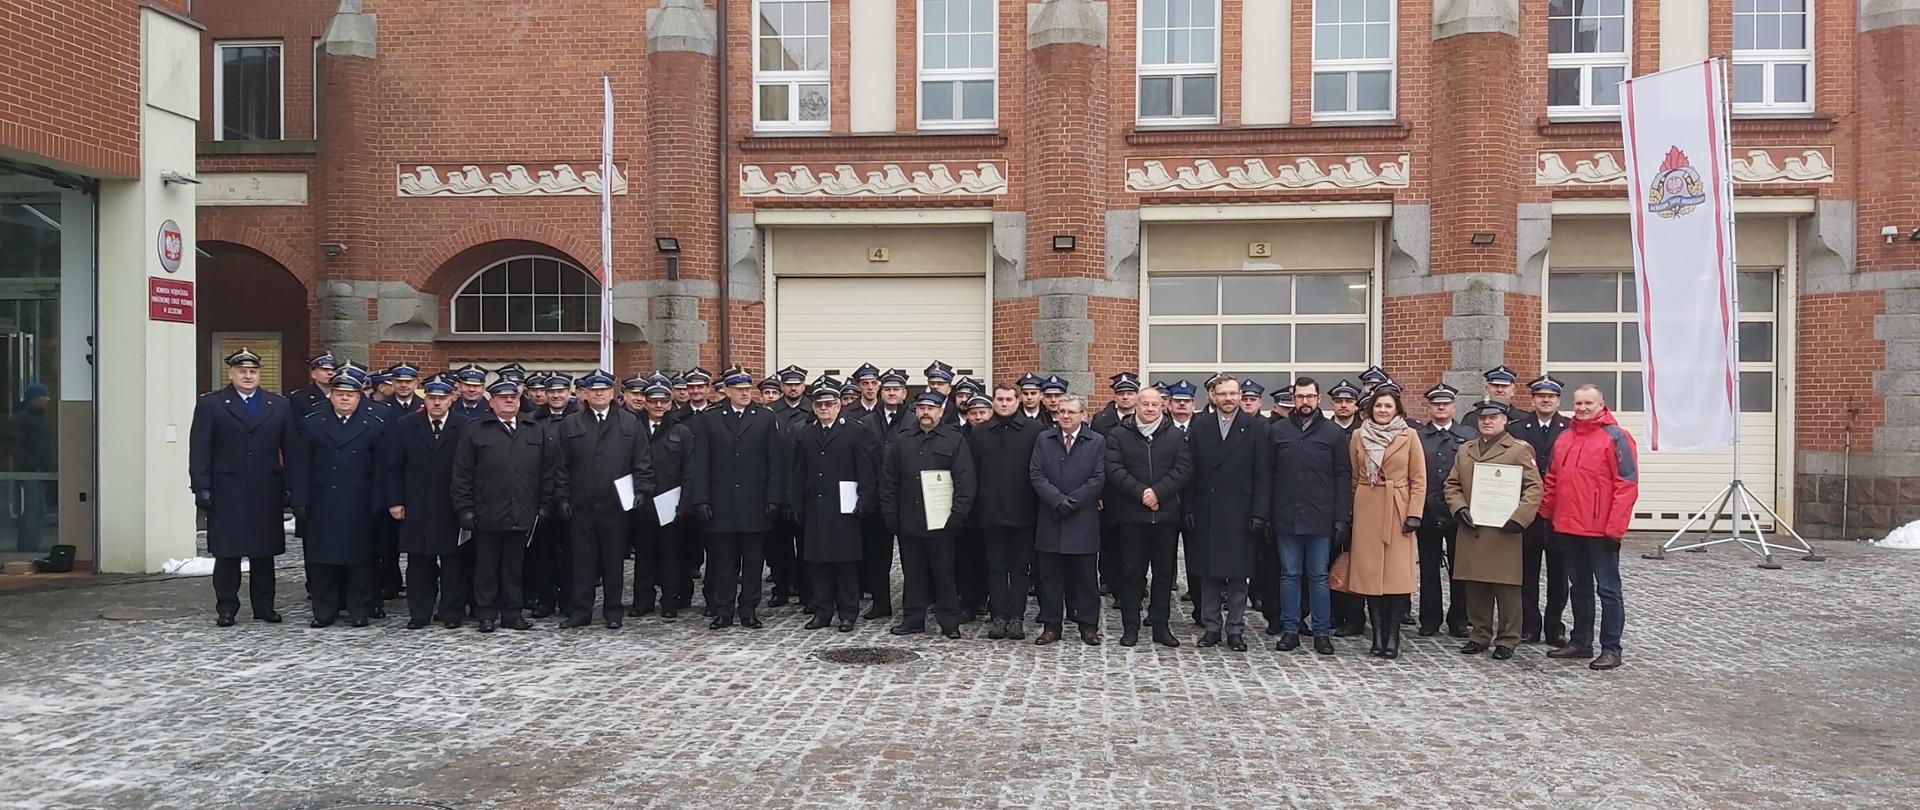 Na zdjęciu widać przedstawicieli Ochotniczych Straży Pożarnych, Wojskowej Straży Pożarnej, Komendantów Miejskich i Powiatowych Państwowej Straży Pożarnej oraz zaproszonych gości pozujących do wspólnego zdjęcia przed budynkiem Komendy Wojewódzkiej PSP w Szczecinie.